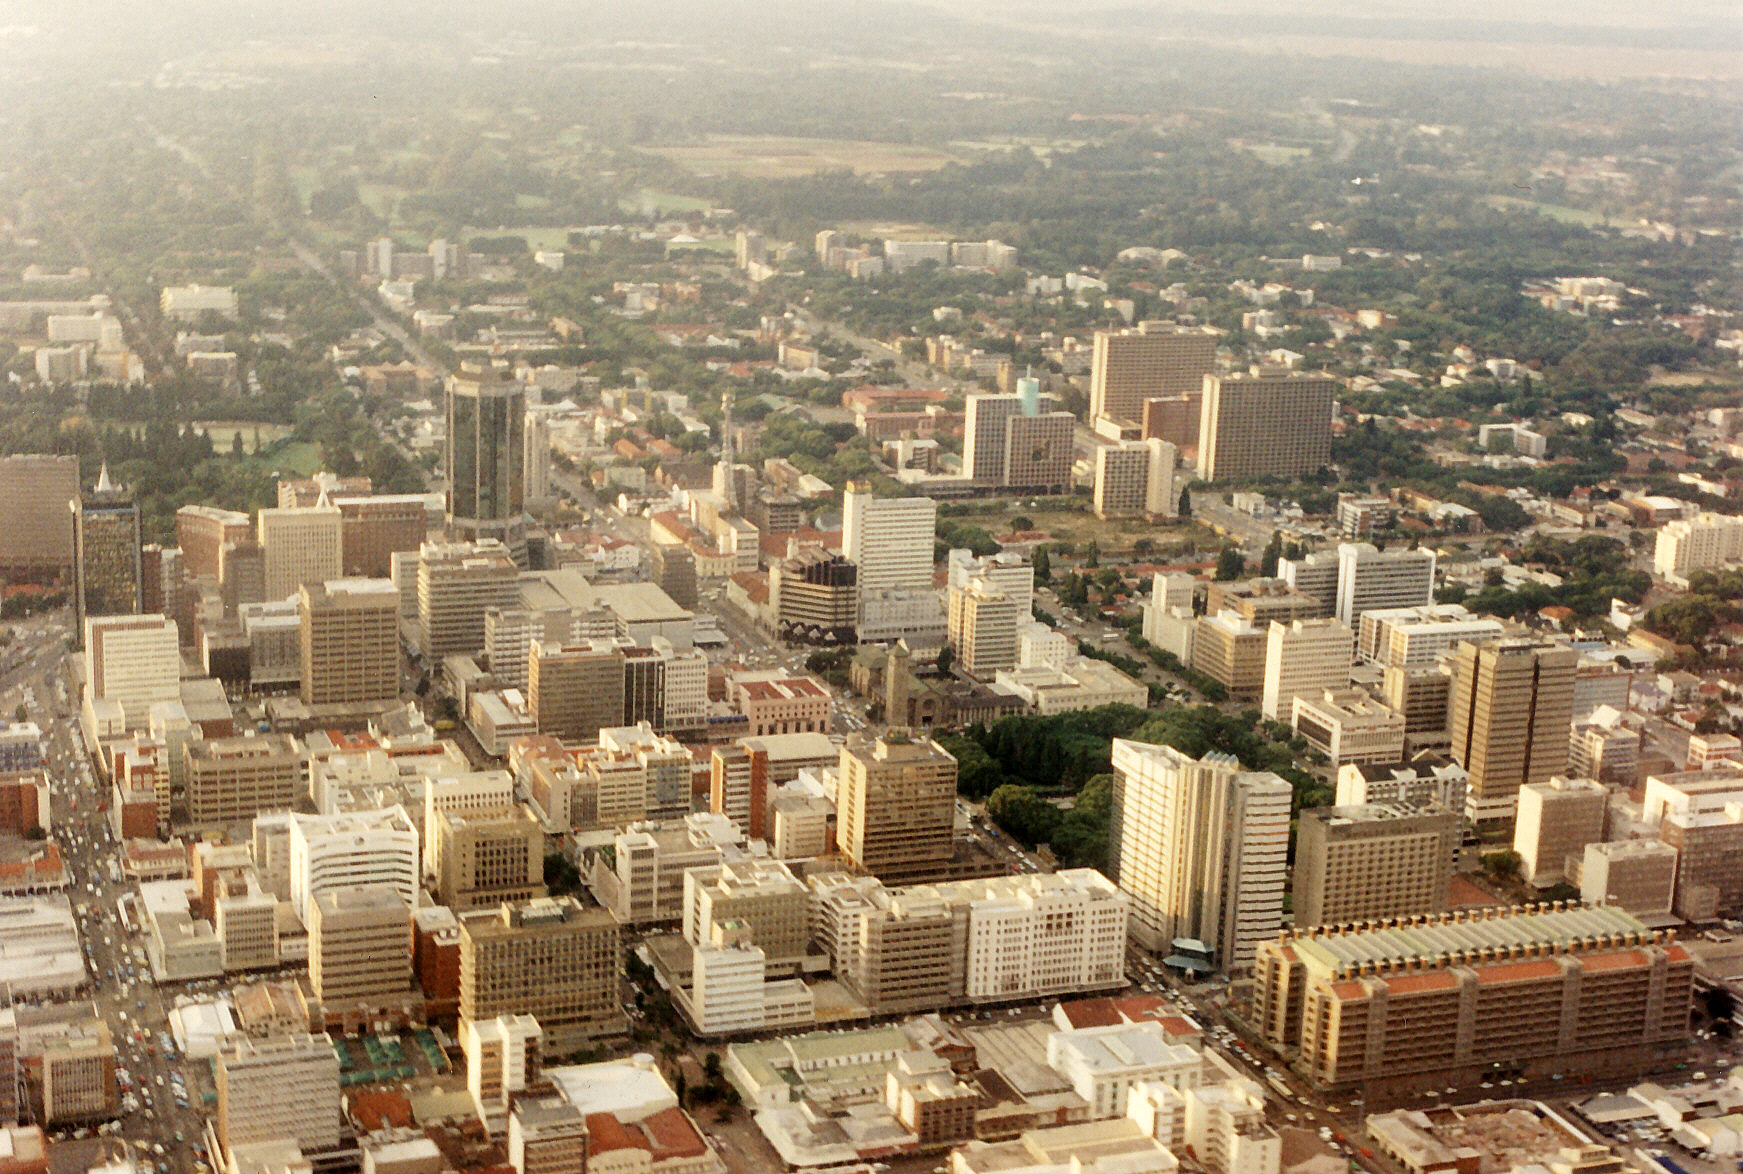 Harare, Zimbabwe (photo credit: Martin Addison/flickr)